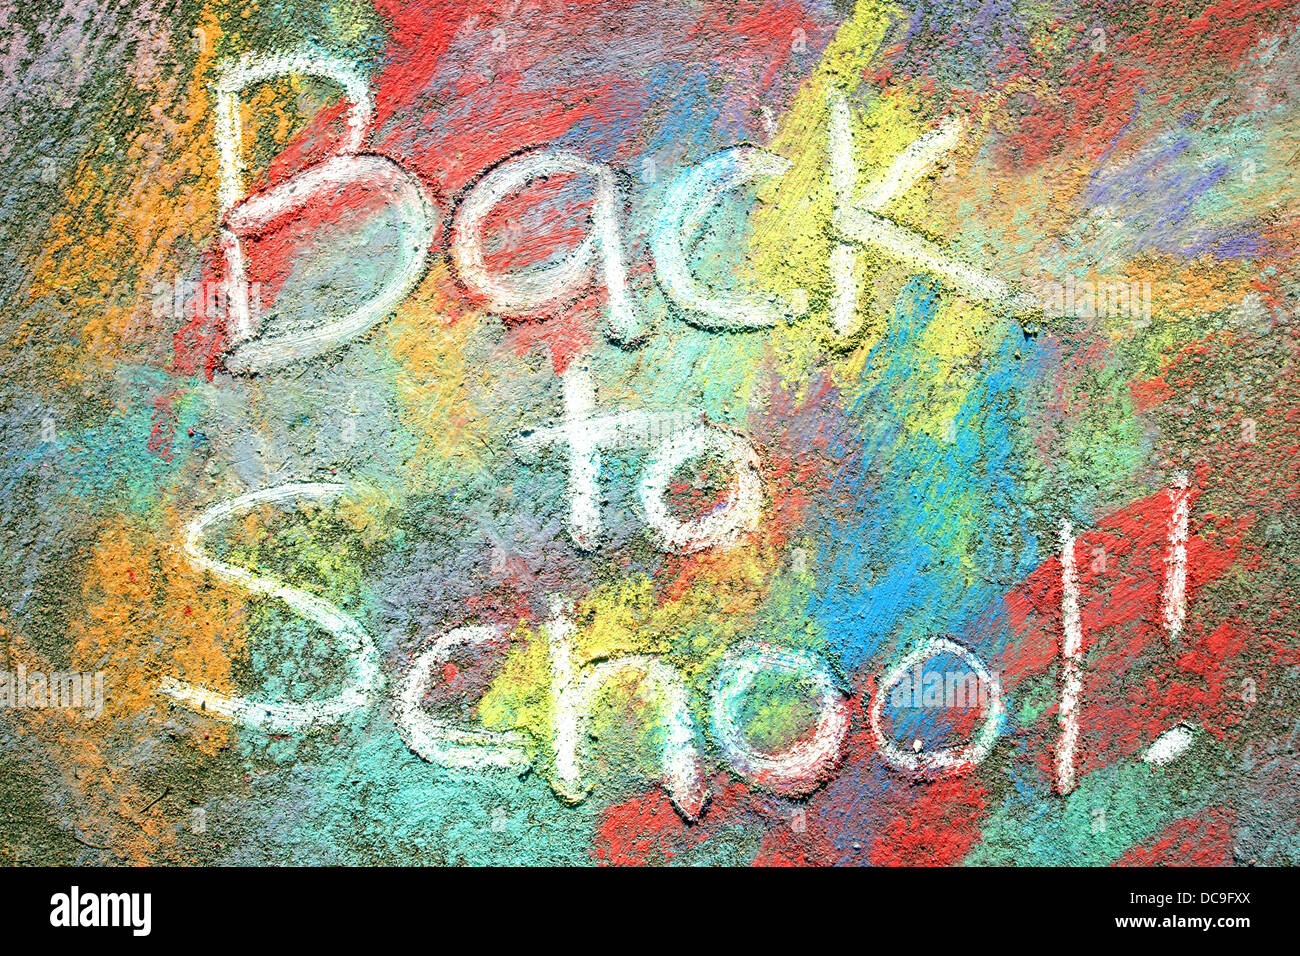 Die Worte wieder in die Schule sind in weißen Bürgersteig Kreide auf einem Hintergrund von Regenbogenfarben Tye-Dye gezeichnet auf dem Bürgersteig geschrieben. Stockfoto